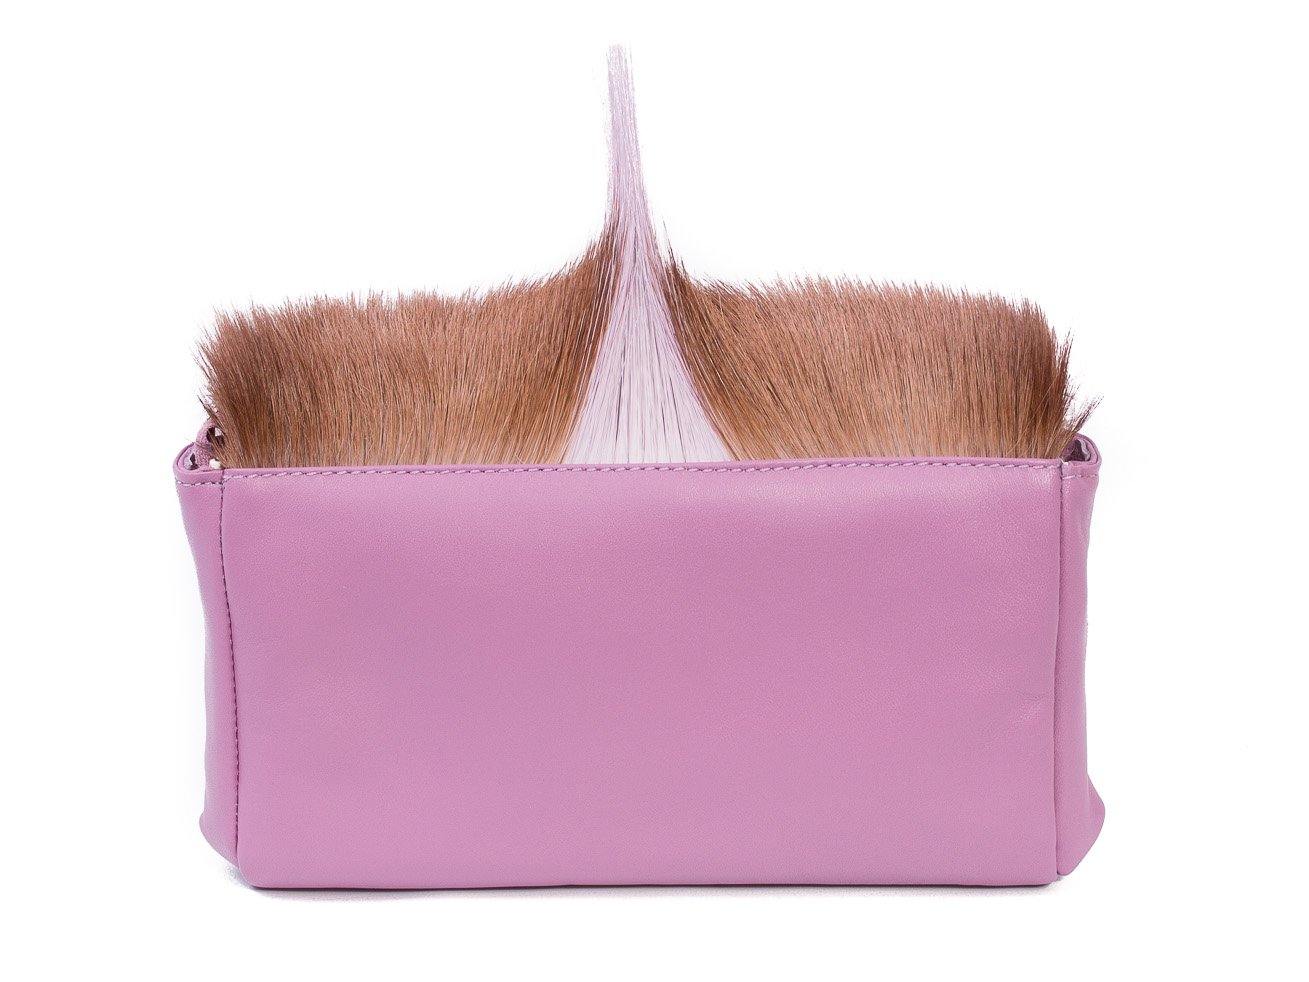 sherene melinda springbok hair-on-hide lavender leather Sophy SS18 Clutch Bag Fan back